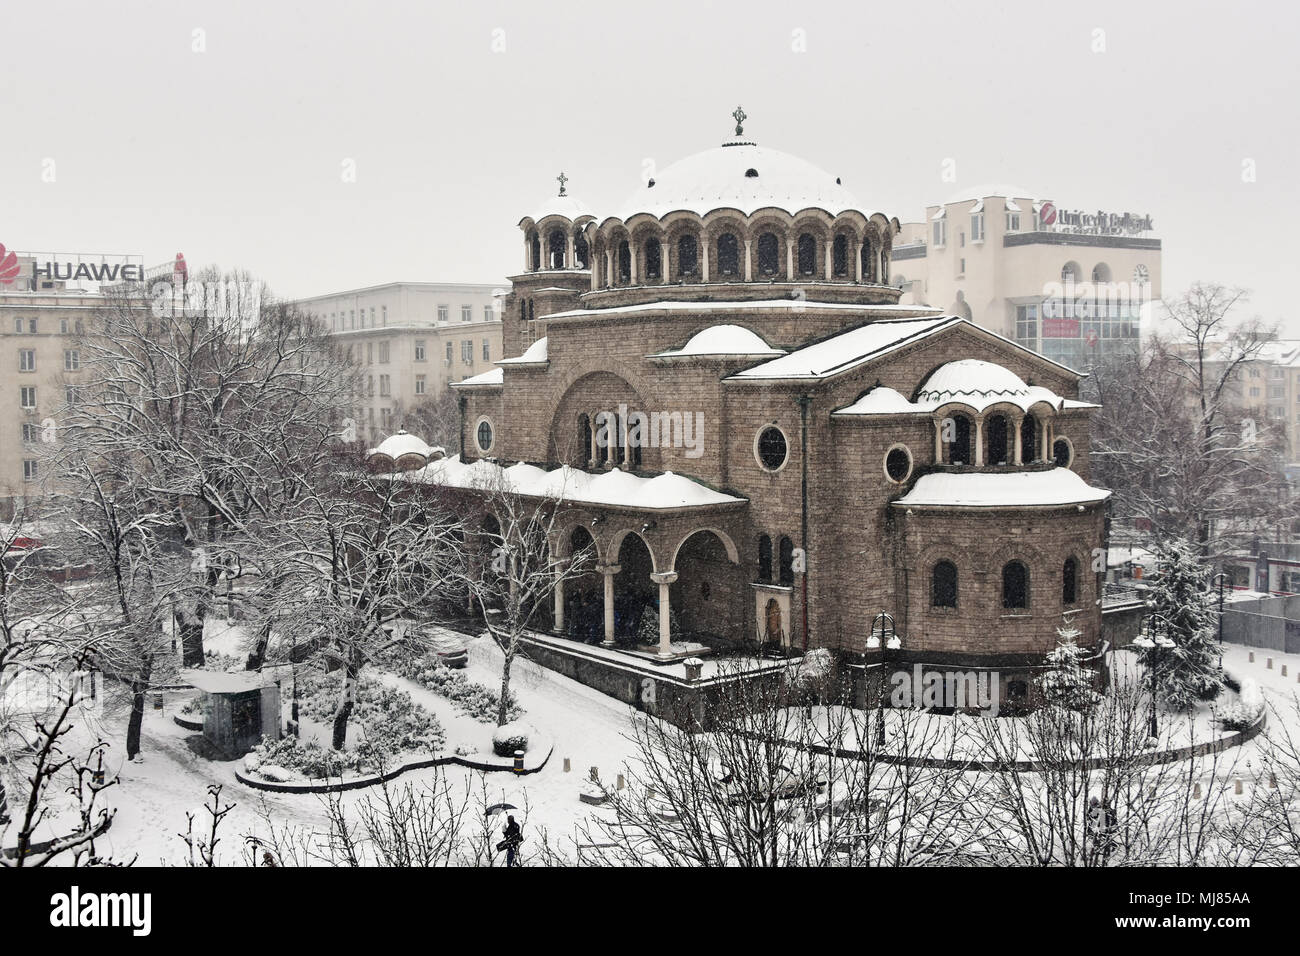 Sofia, Bulgaria - 22 Marzo 2018: Freddo nevoso inverno cupo giorno nella città di Sofia. Saint Nedelya Chiesa Ortodossa e Saint Nedelya Square nella neve Foto Stock